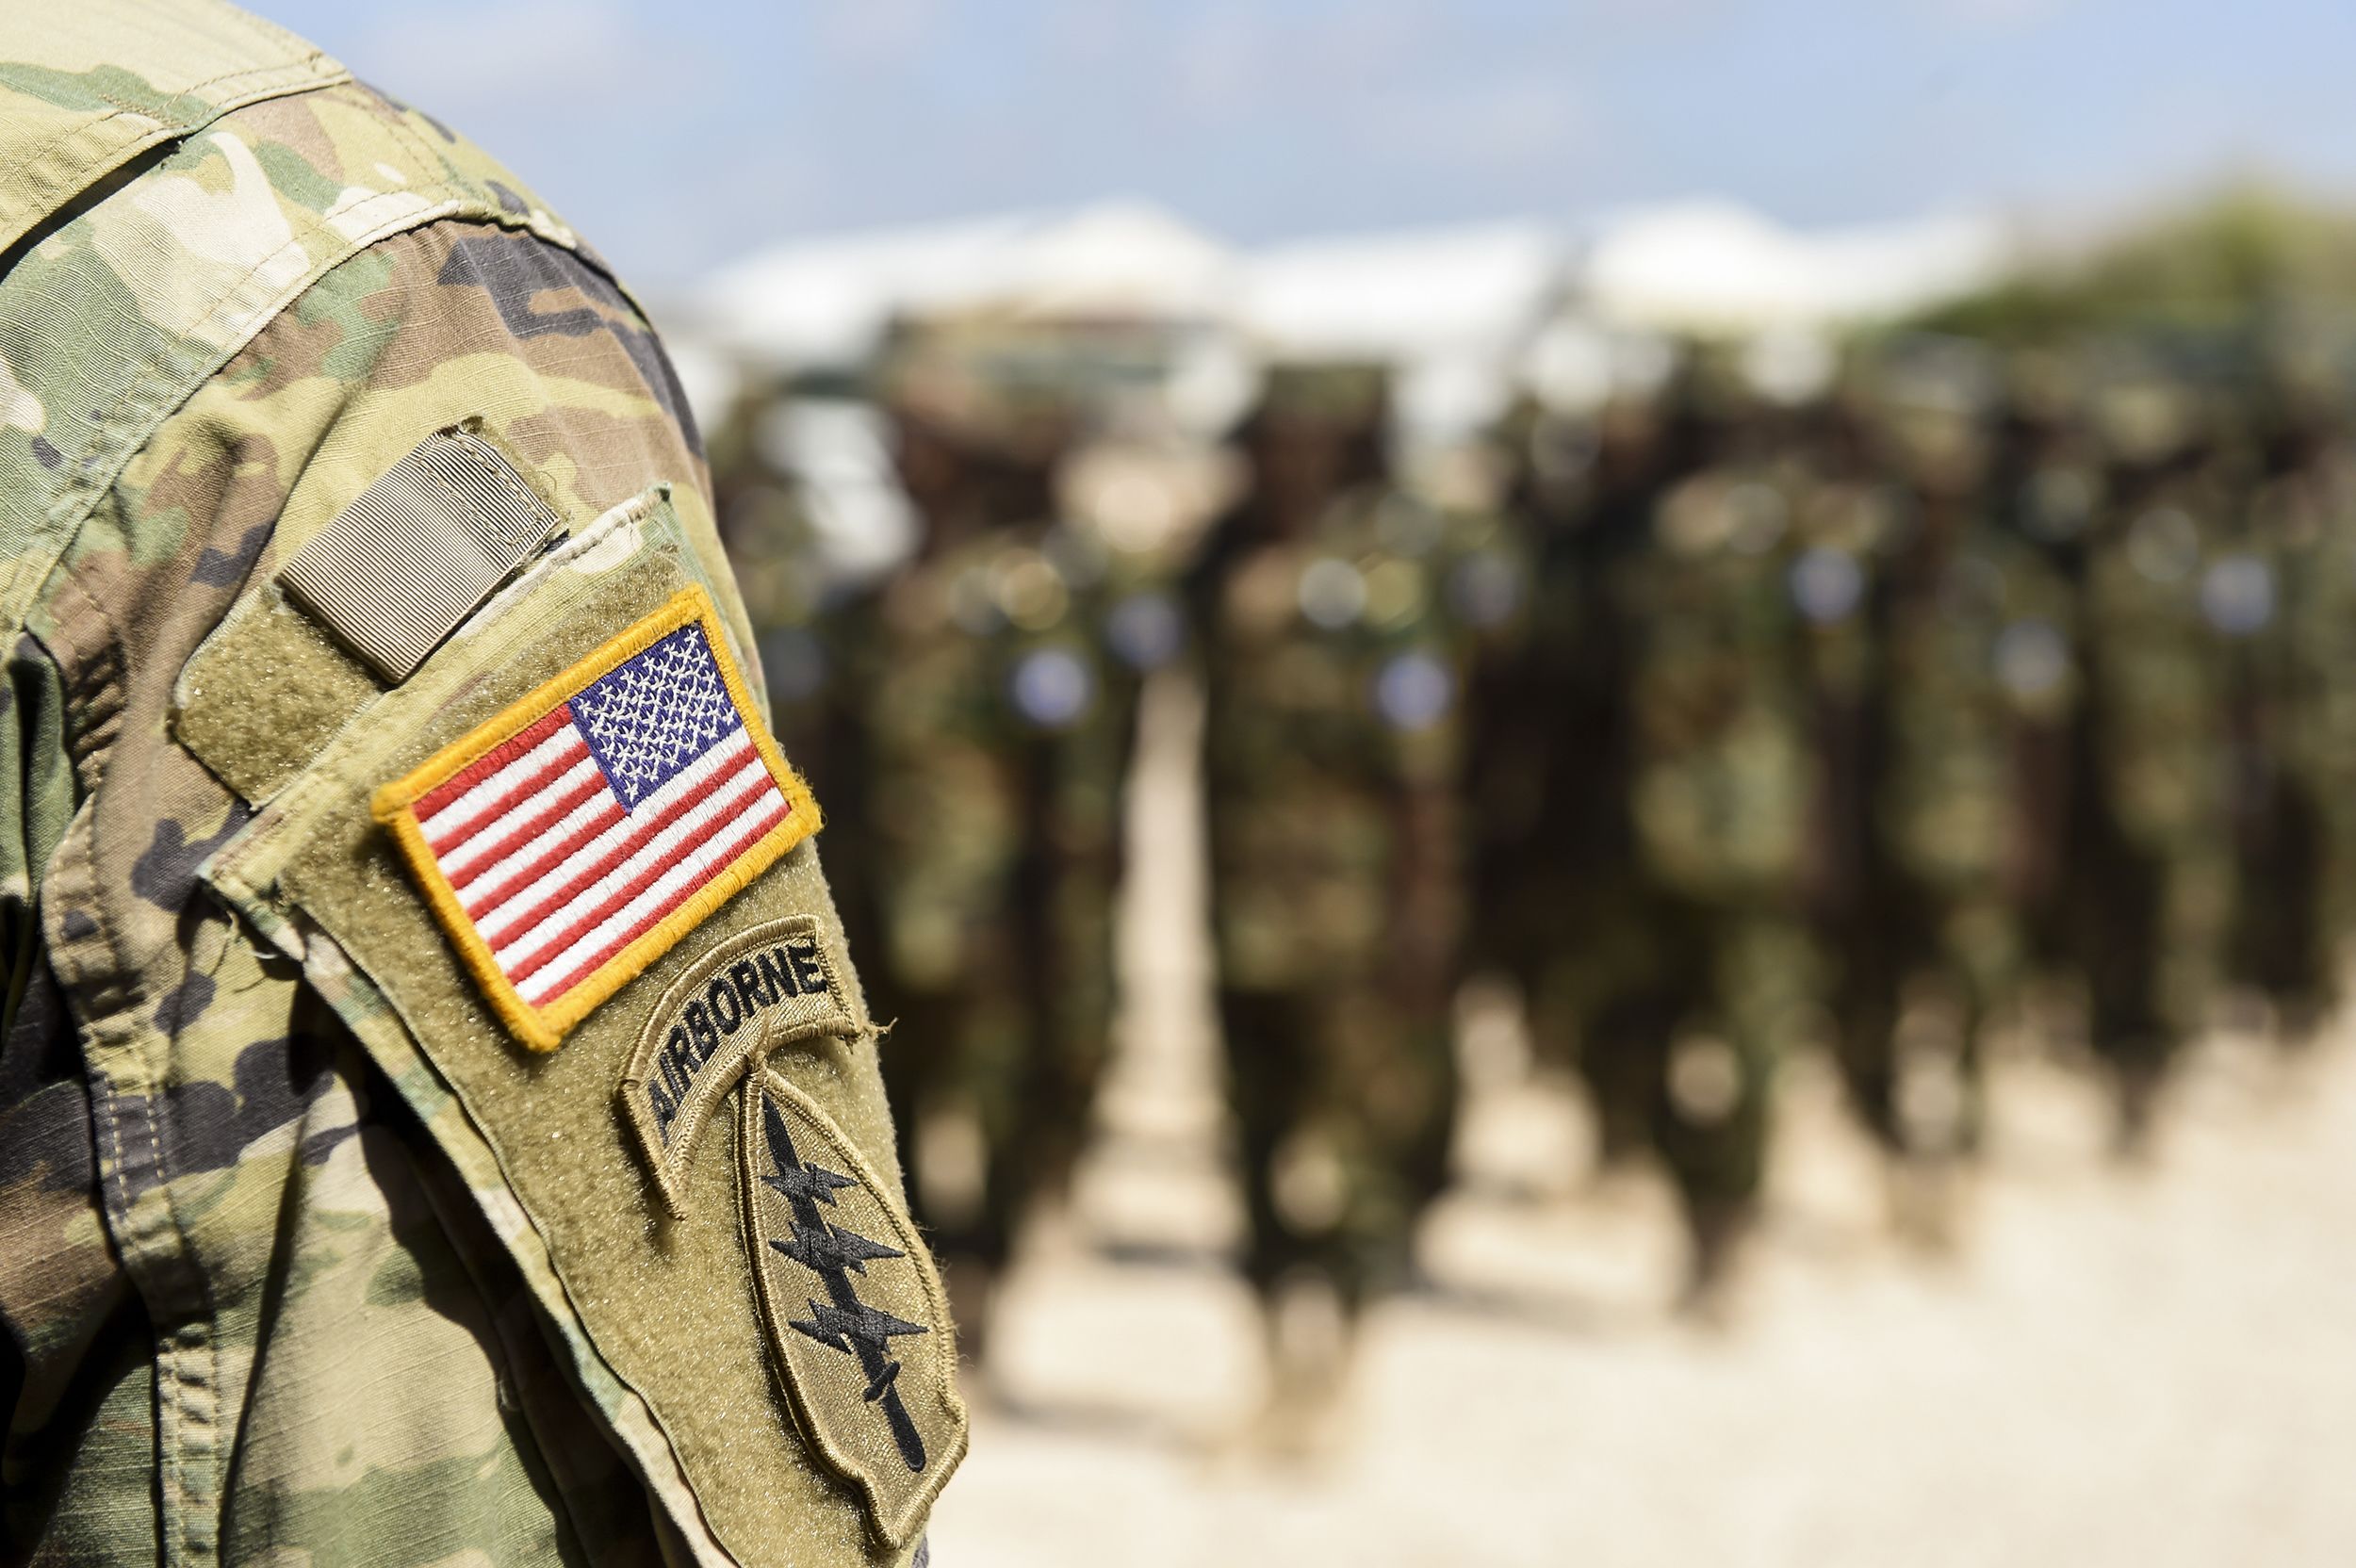 somaliland army 2022